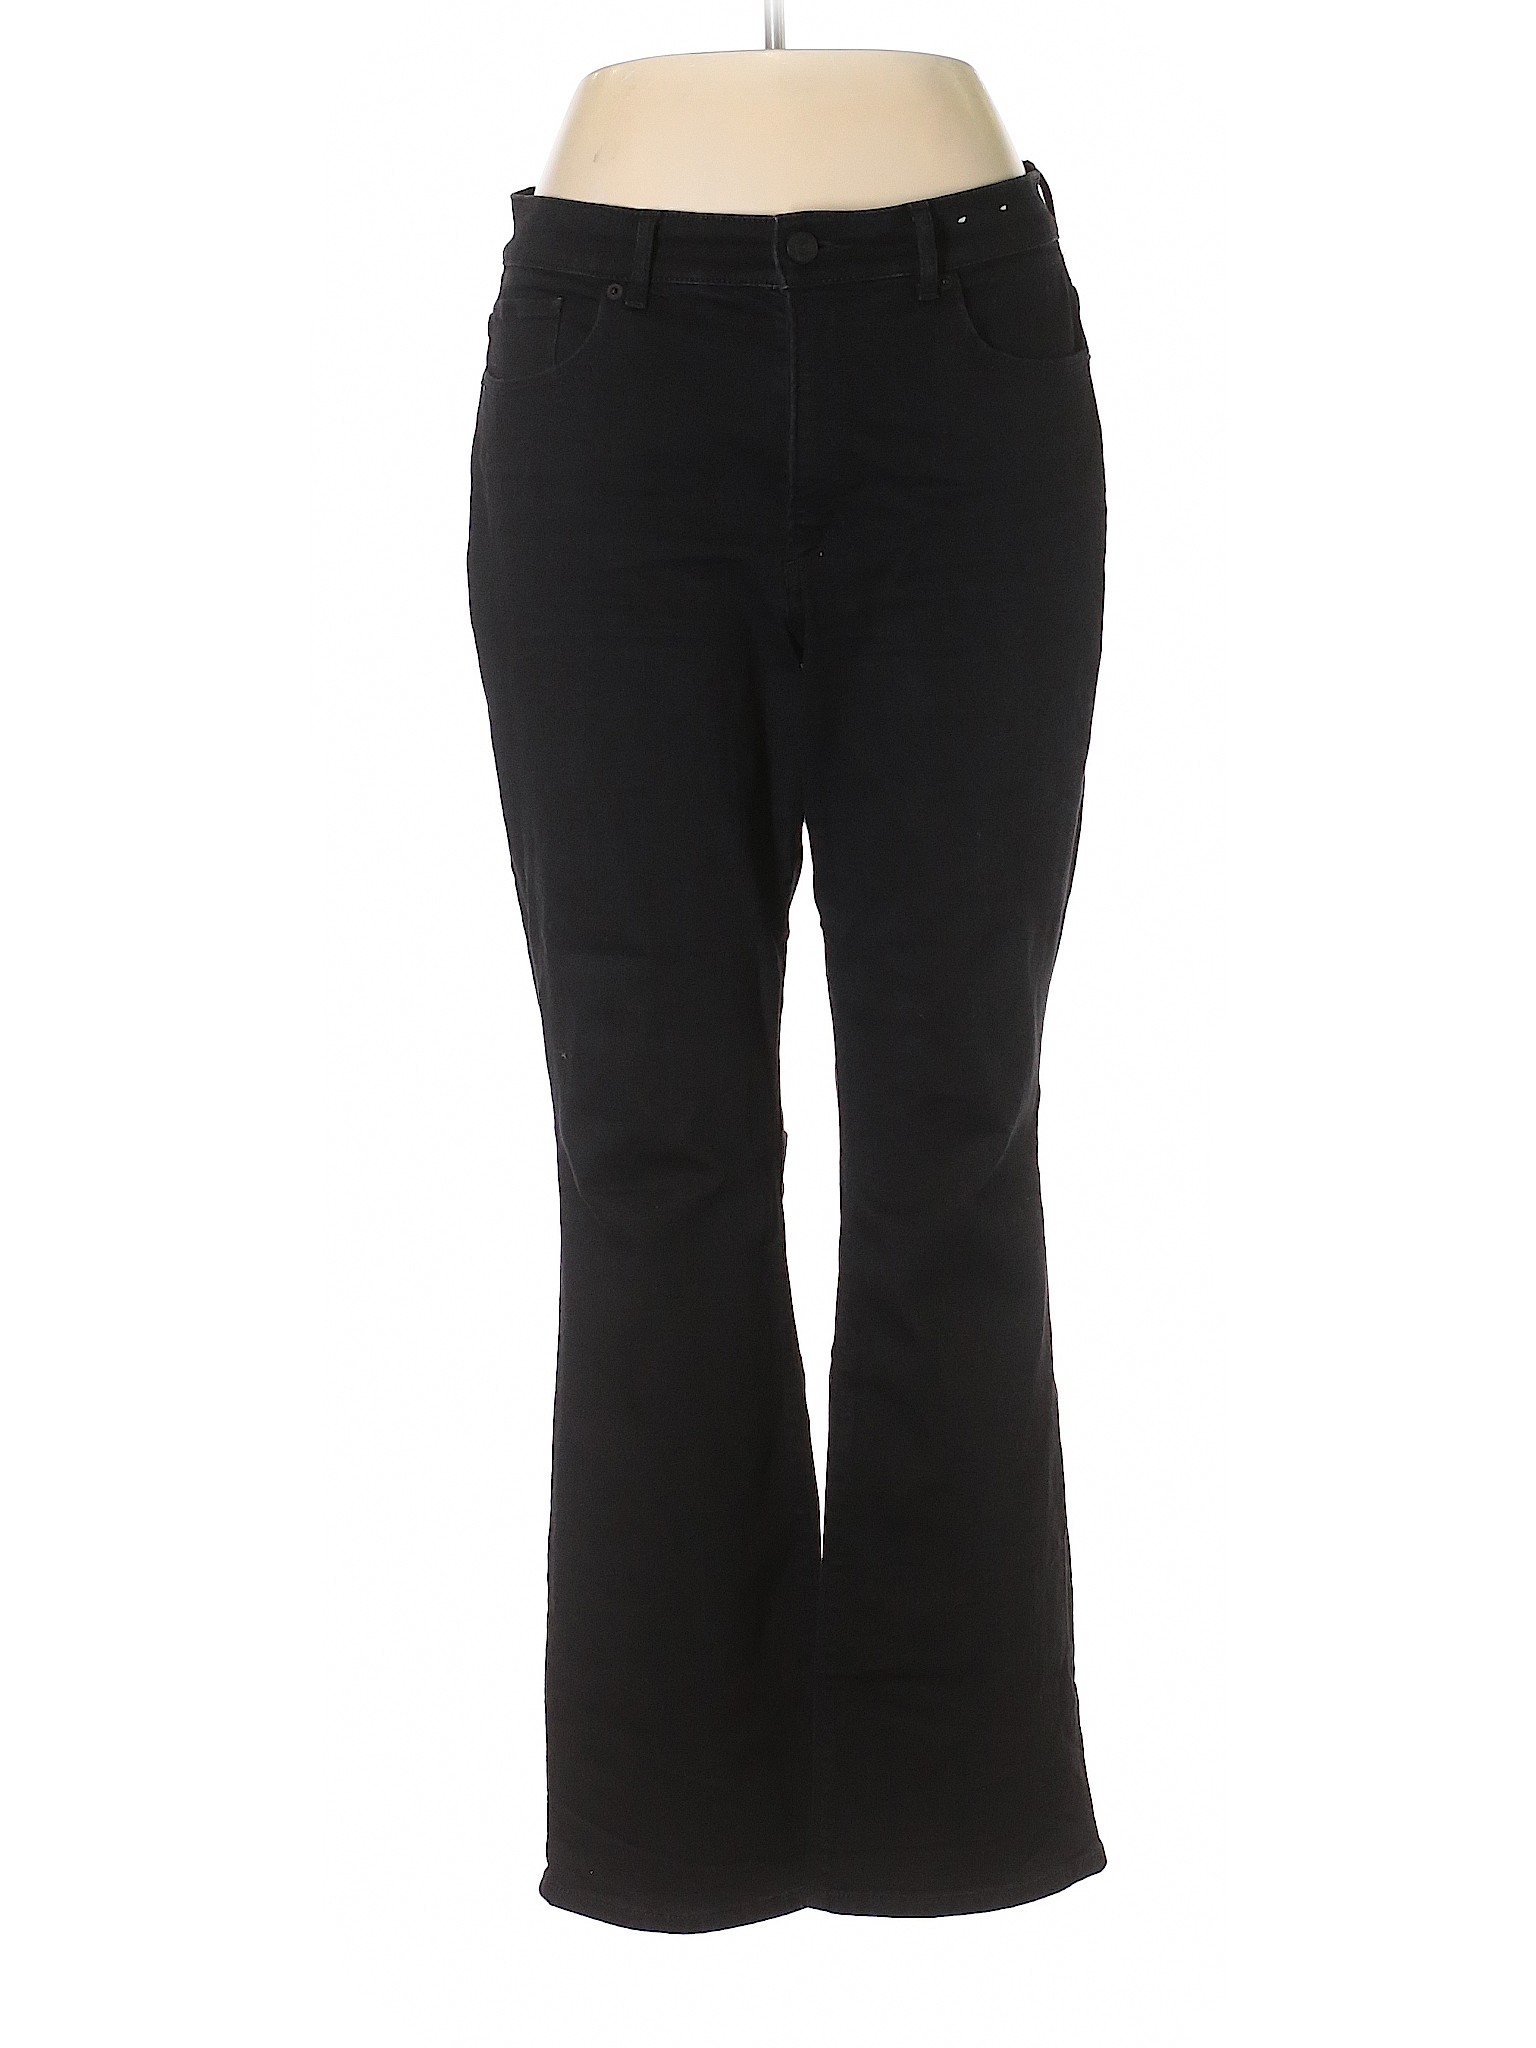 Express Women Black Jeans 12 | eBay